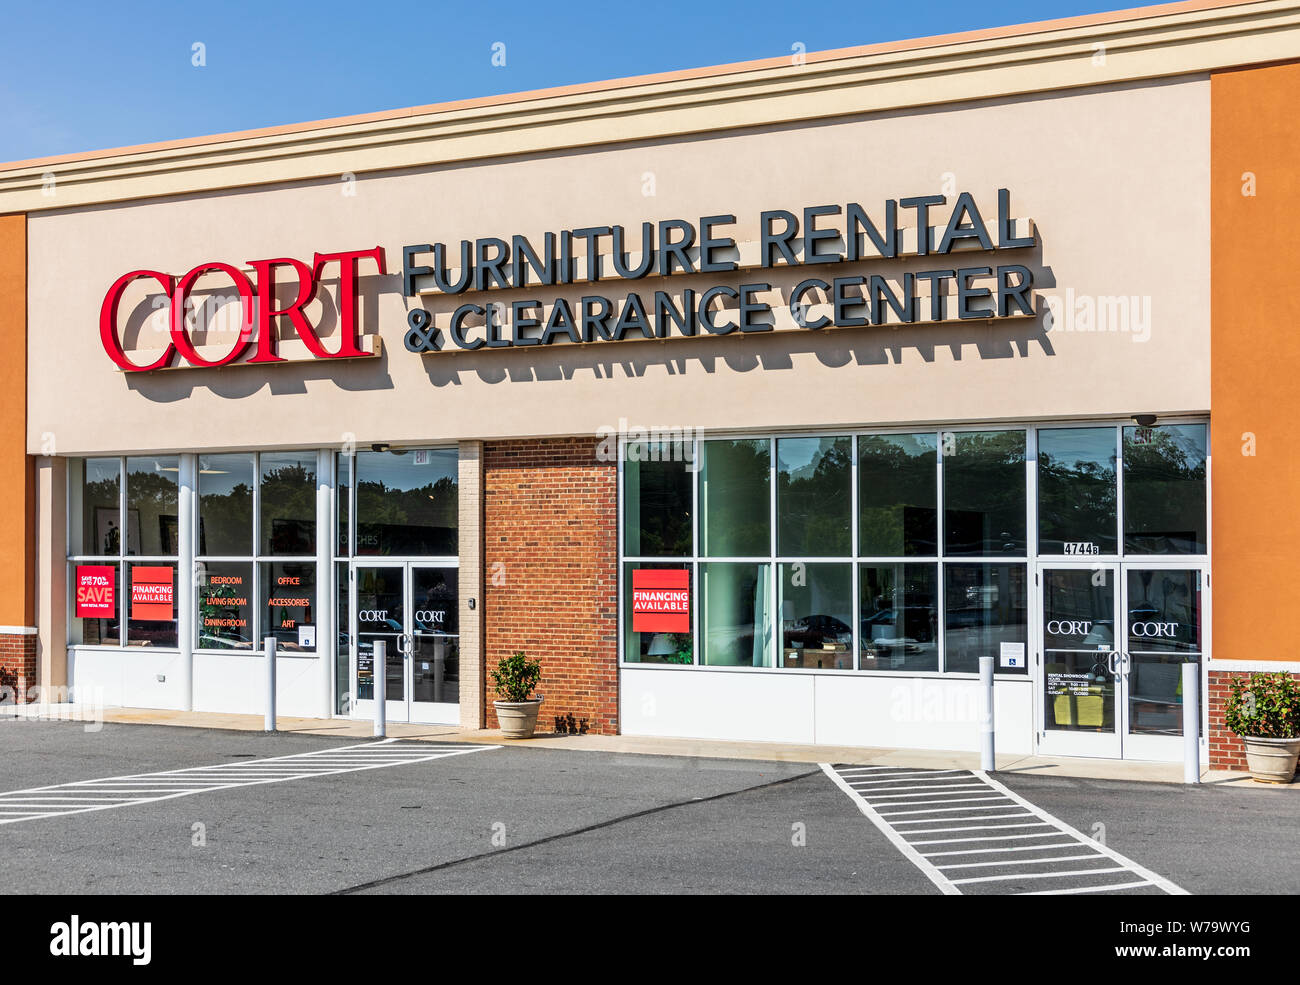 CHARLOTTE, NC, USA-28 Juillet 19 : location de mobilier Cort employés 2 500 personnes dans plus de 100 endroits dans le monde entier. Banque D'Images